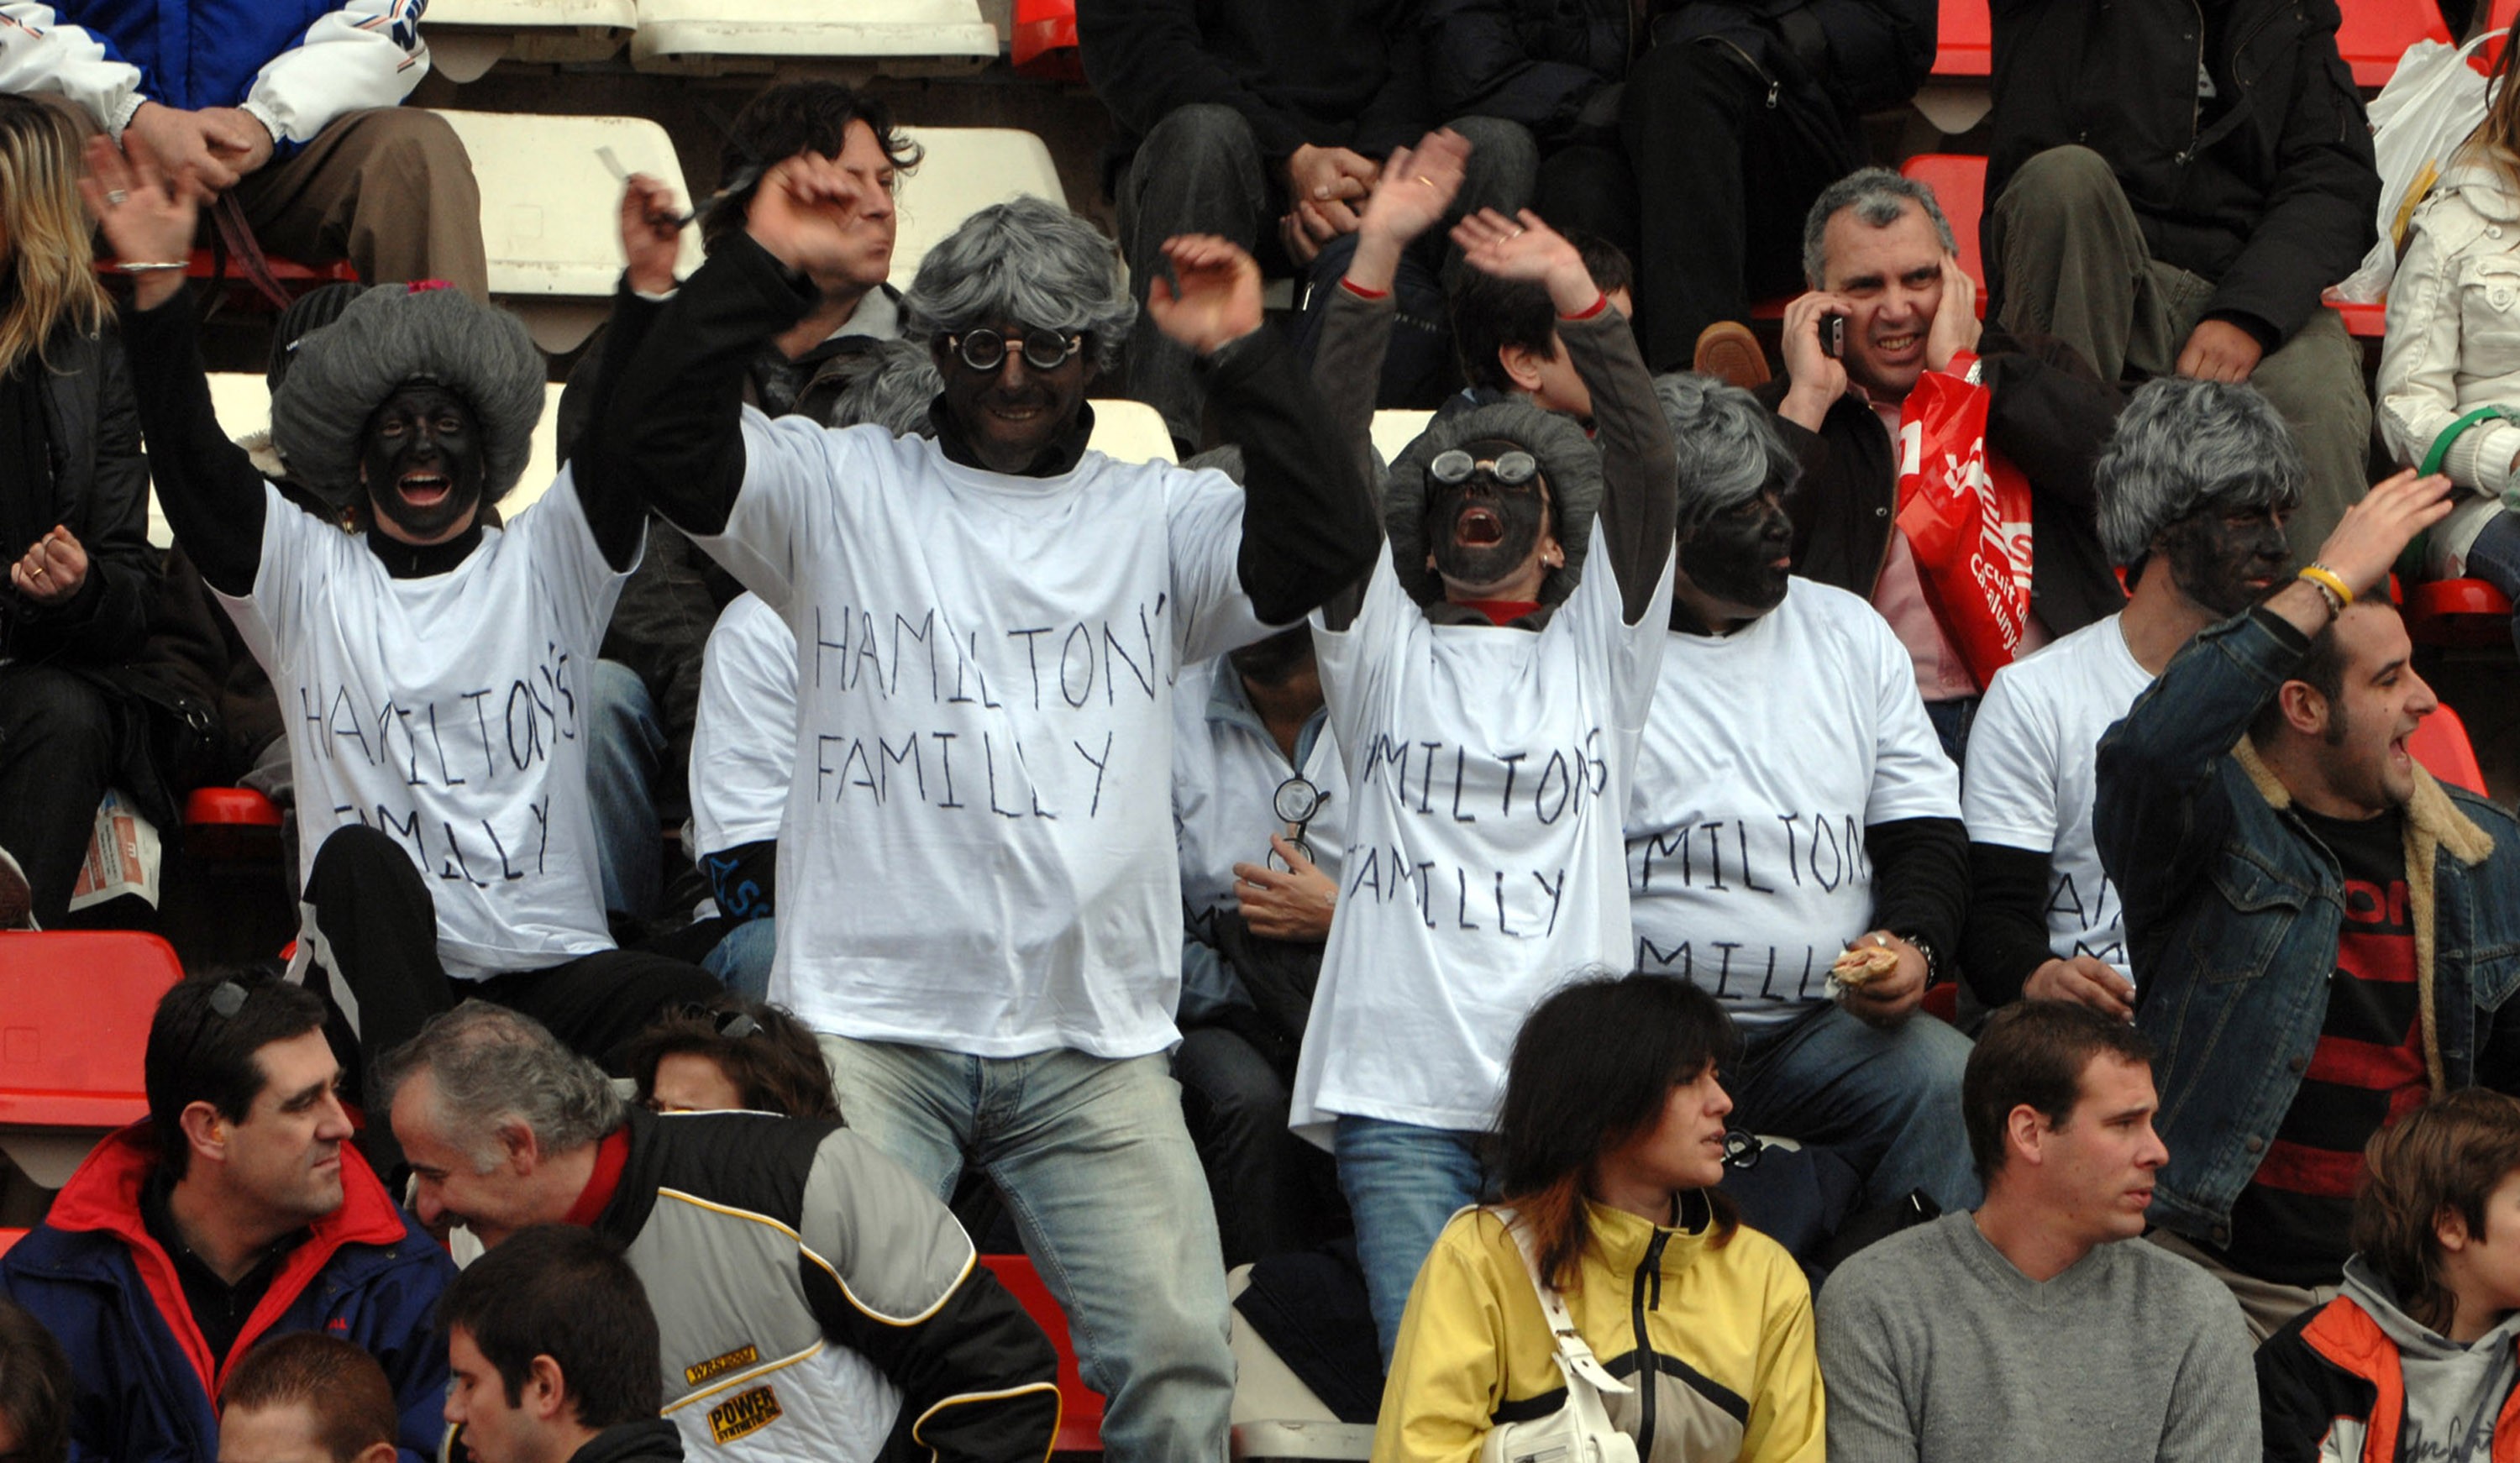 Torcedores realizaram atos racista durante os testes durante o Circuito da Catalunha, em 2008 (Foto: Joanne Burnett/Getty Images)